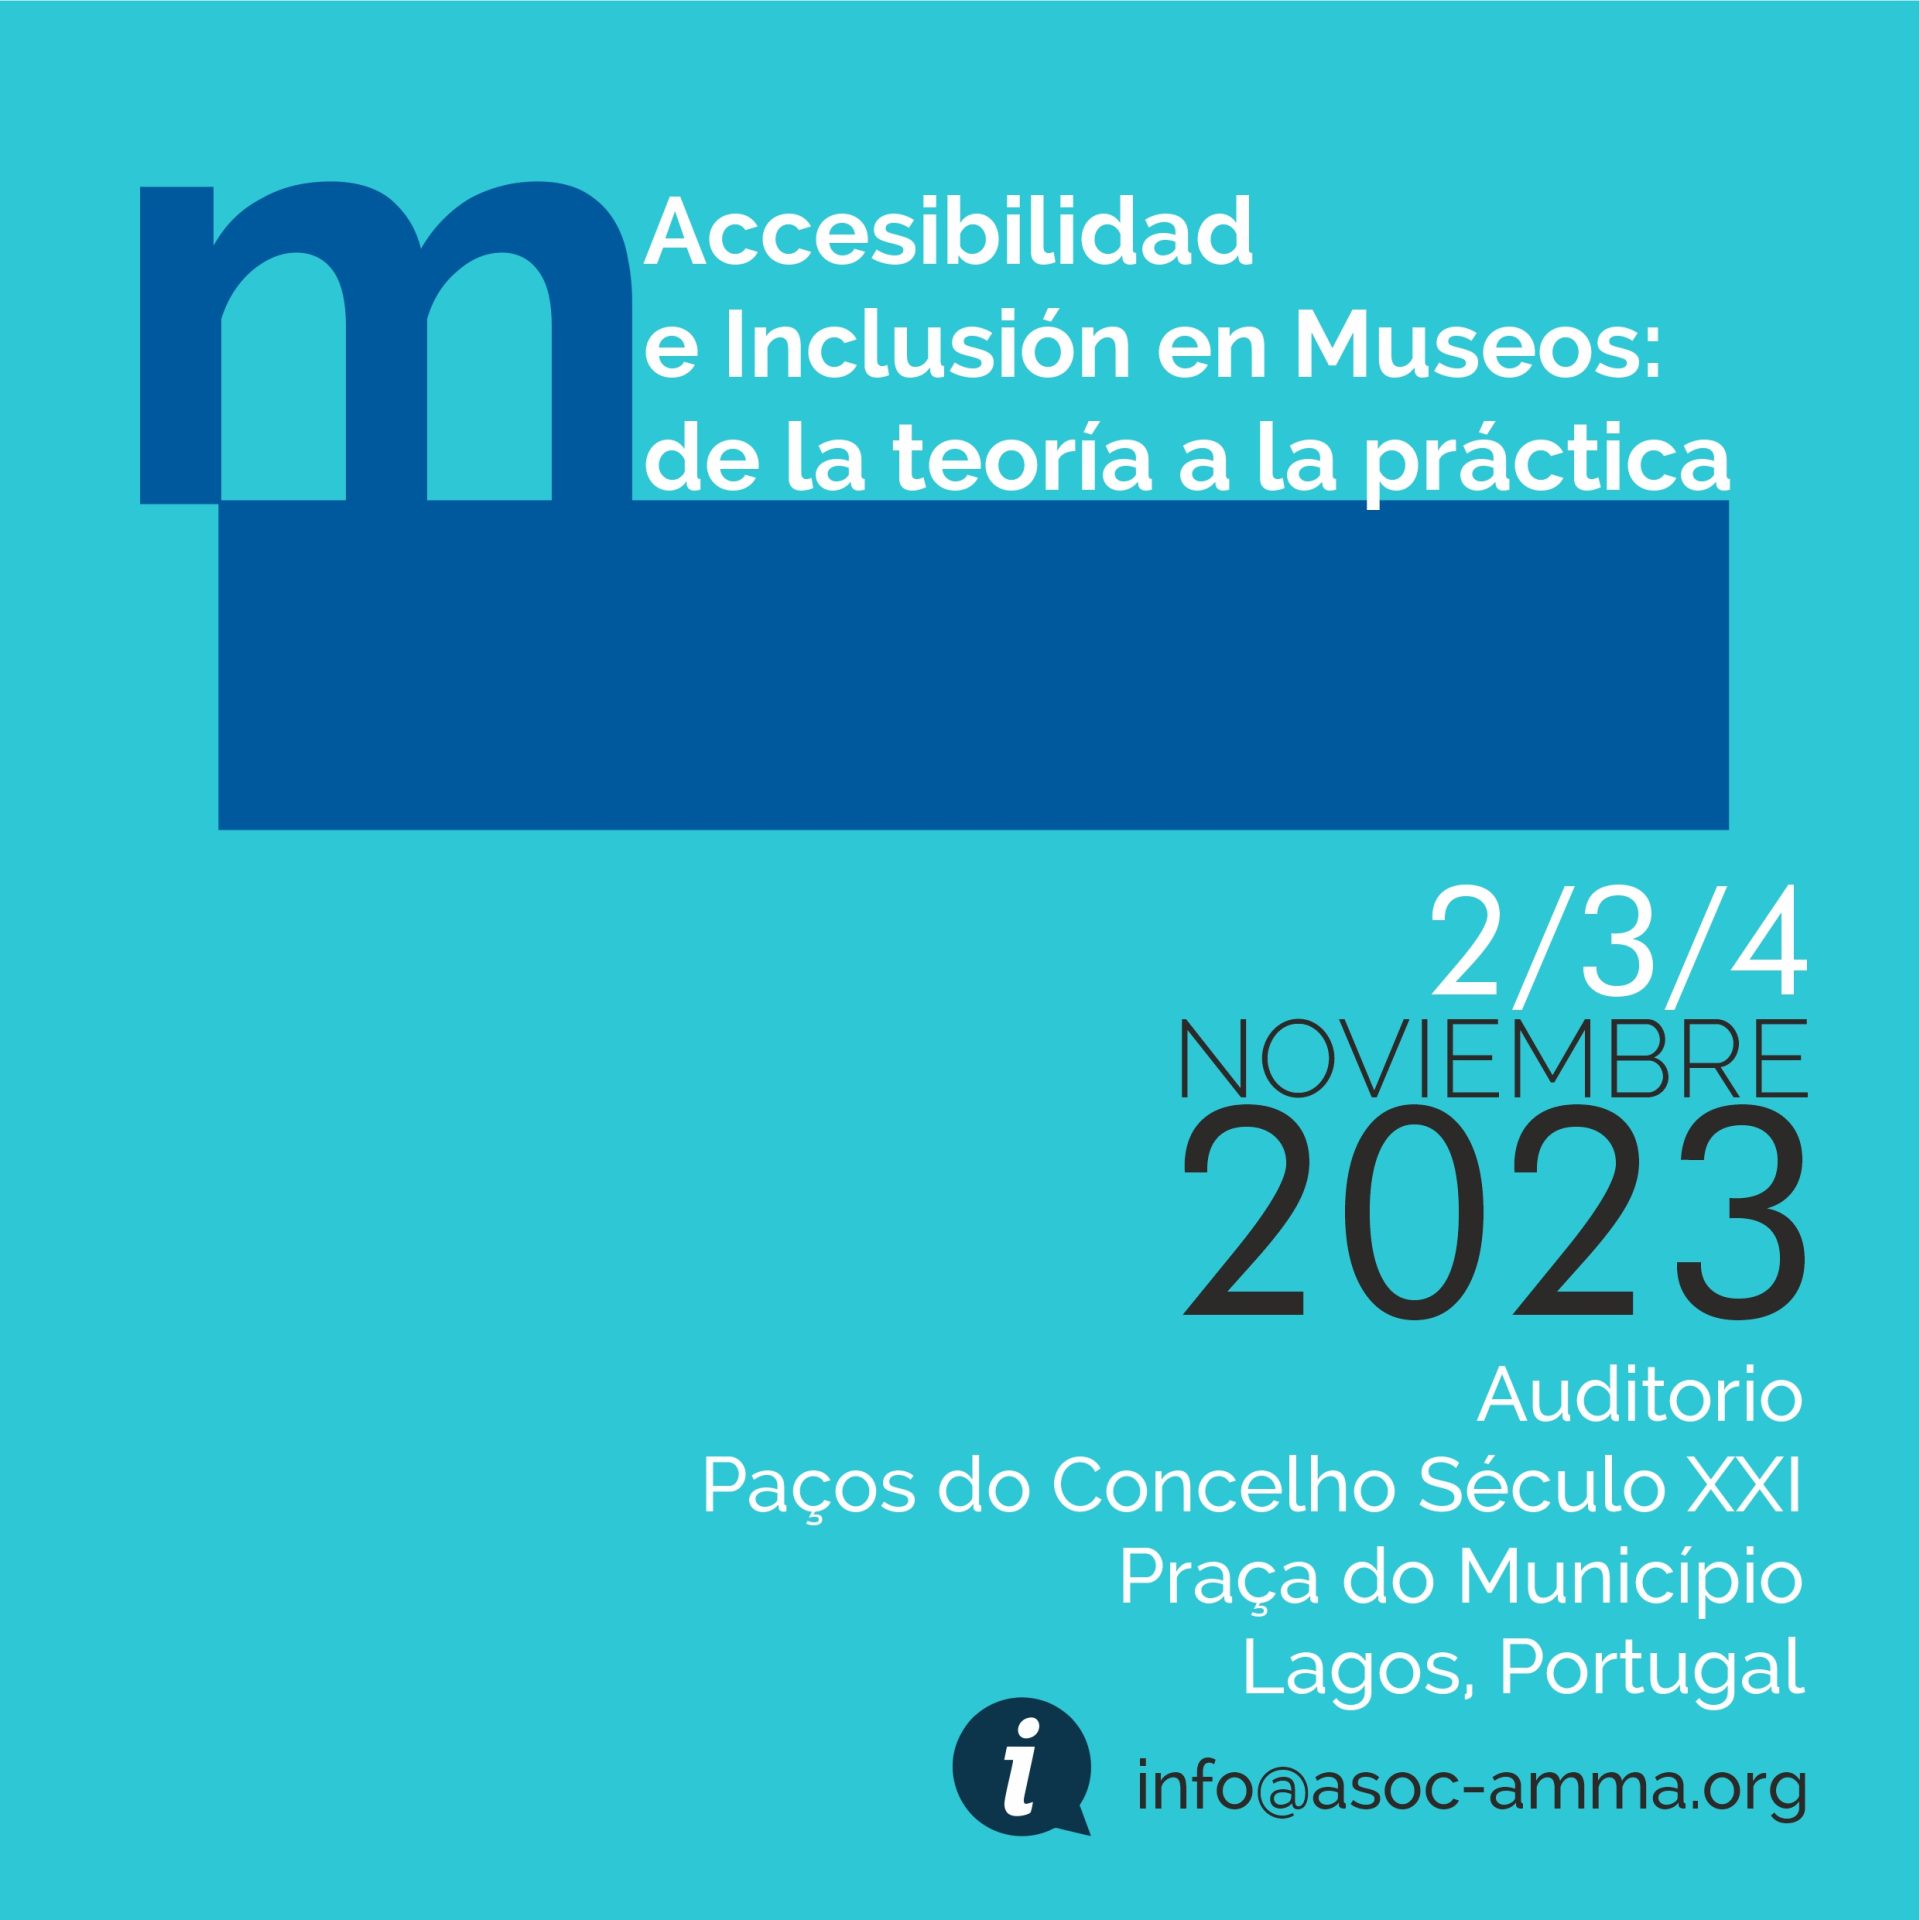 Cartel del las jornadas tituladas "ACCESIBILIDAD E INCLUSIÓN EN MUSEOS: DE LA TEORÍA A LA PRÁCTICA" realizadas en lagos, portugal del 2 al 4 de noviembre.